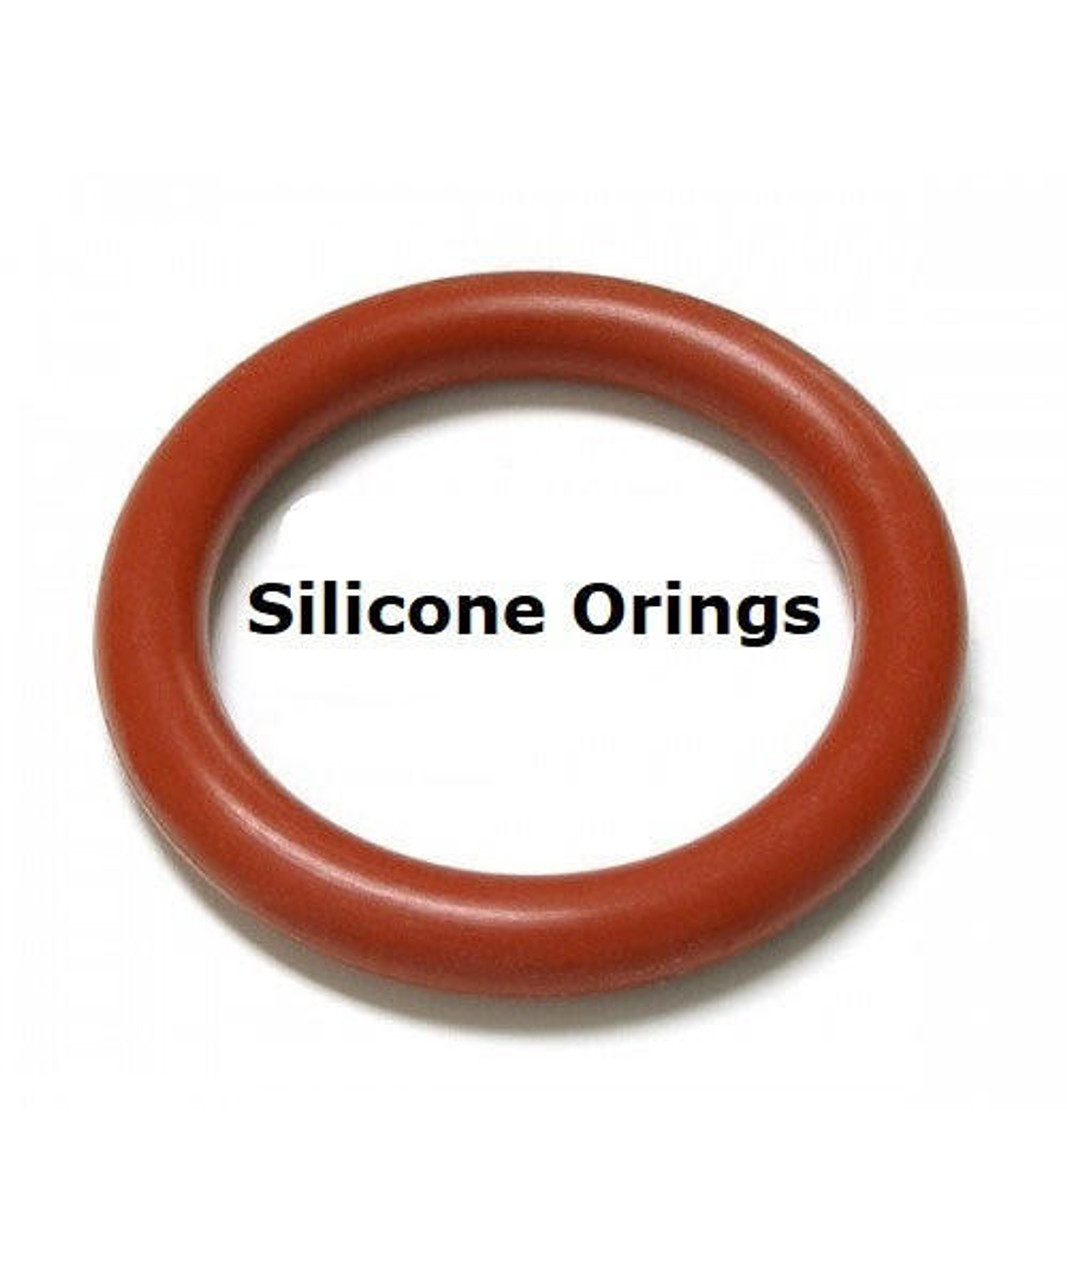 Silicone O-rings Size 336   Minimum 2 pcs